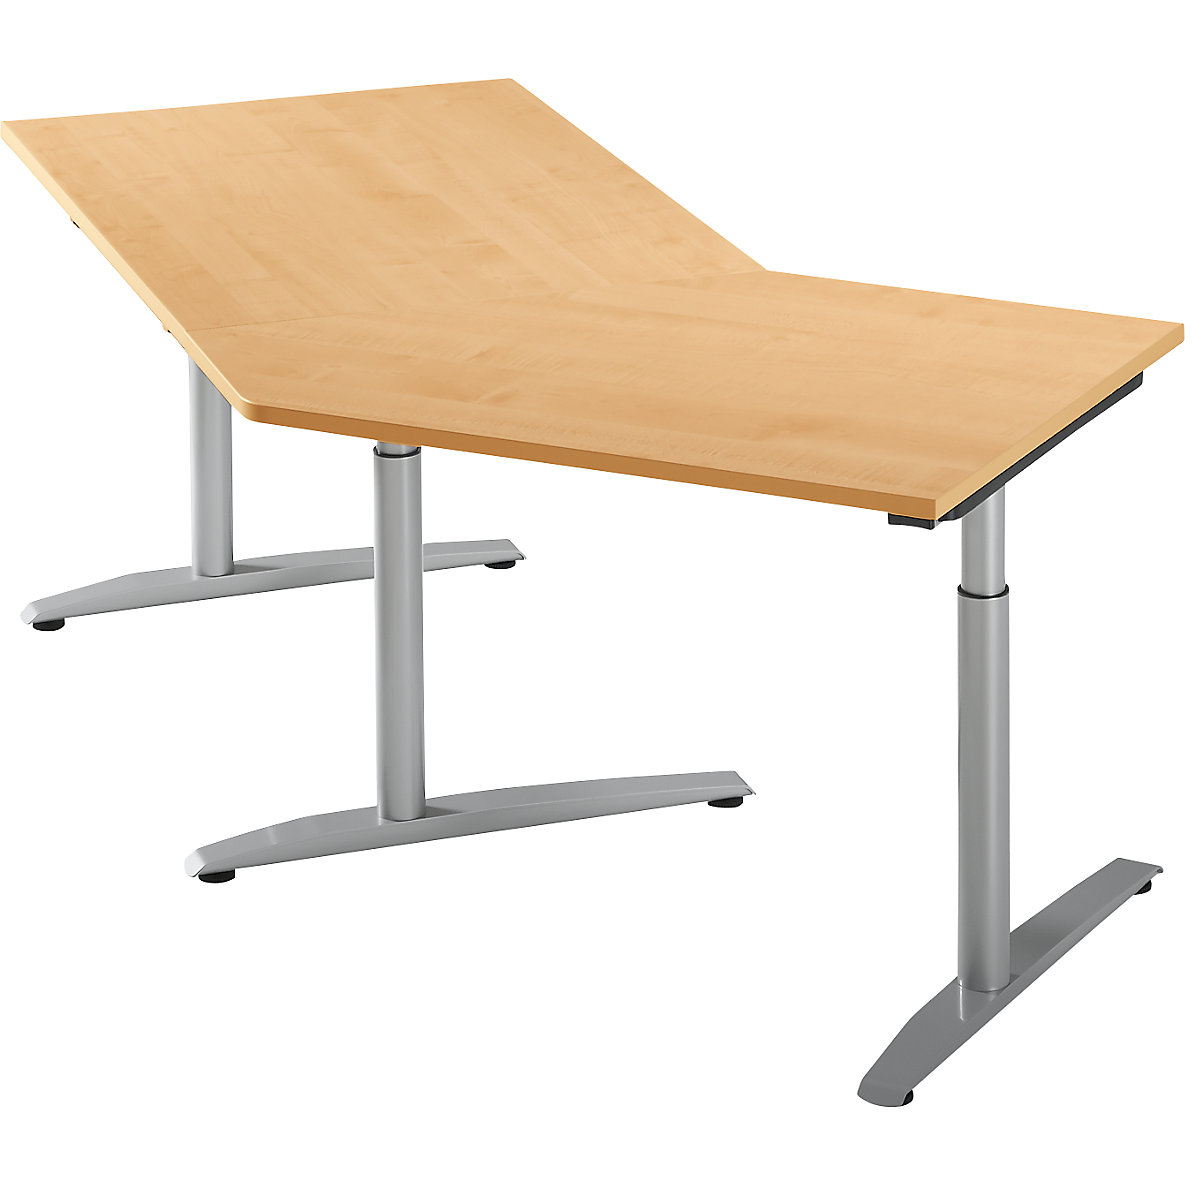 Table d'extension réglable en hauteur de 650 à 850 mm HANNA